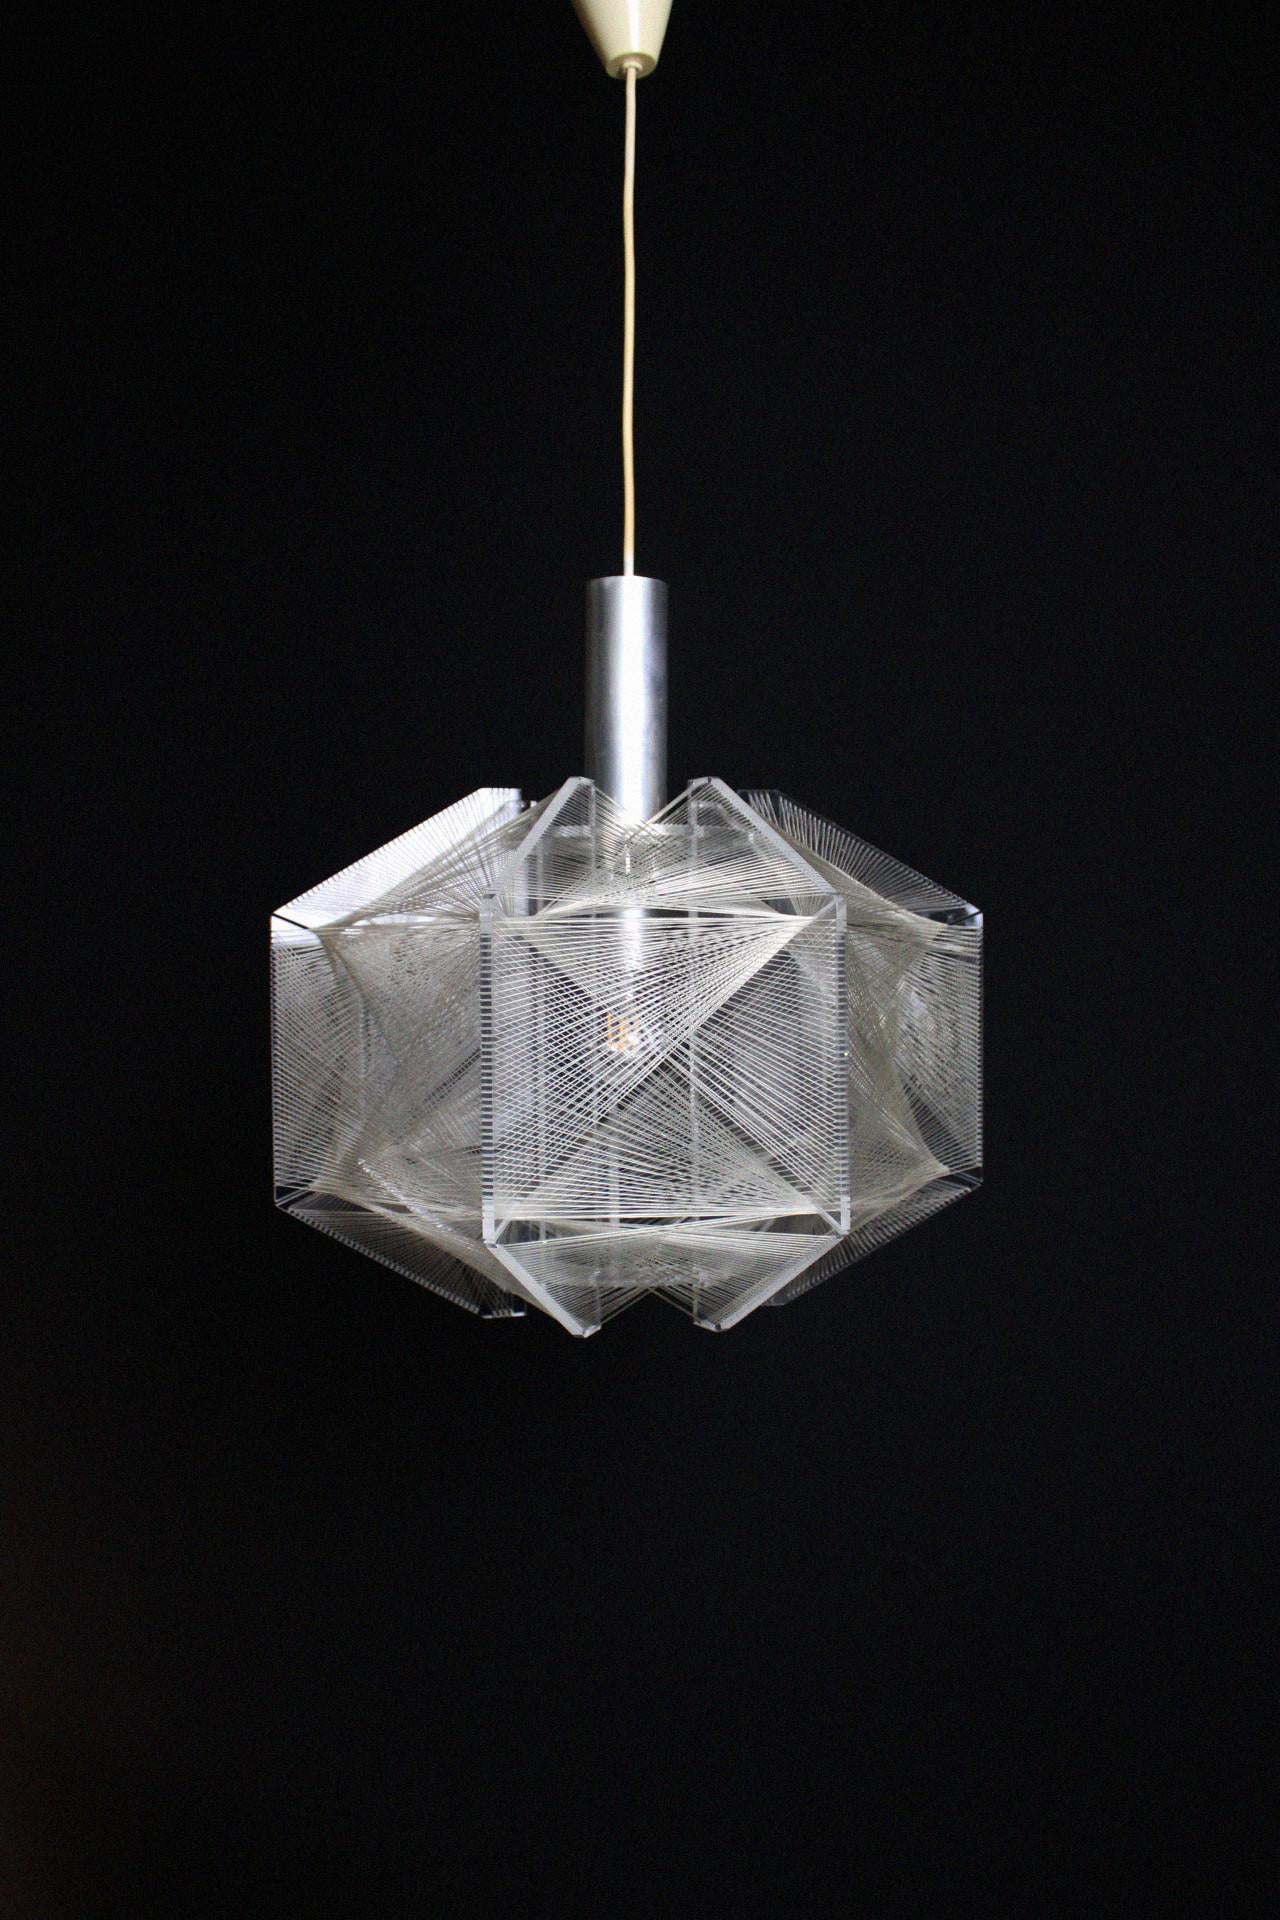 Diese zeitlos schöne Pendelleuchte ist ein Entwurf aus den 1970er Jahren und wurde von Paul Secon für den deutschen Hersteller Sompex entworfen, der auch heute noch qualitativ hochwertige Leuchten herstellt. Die Lampe ist in perfektem, originalem